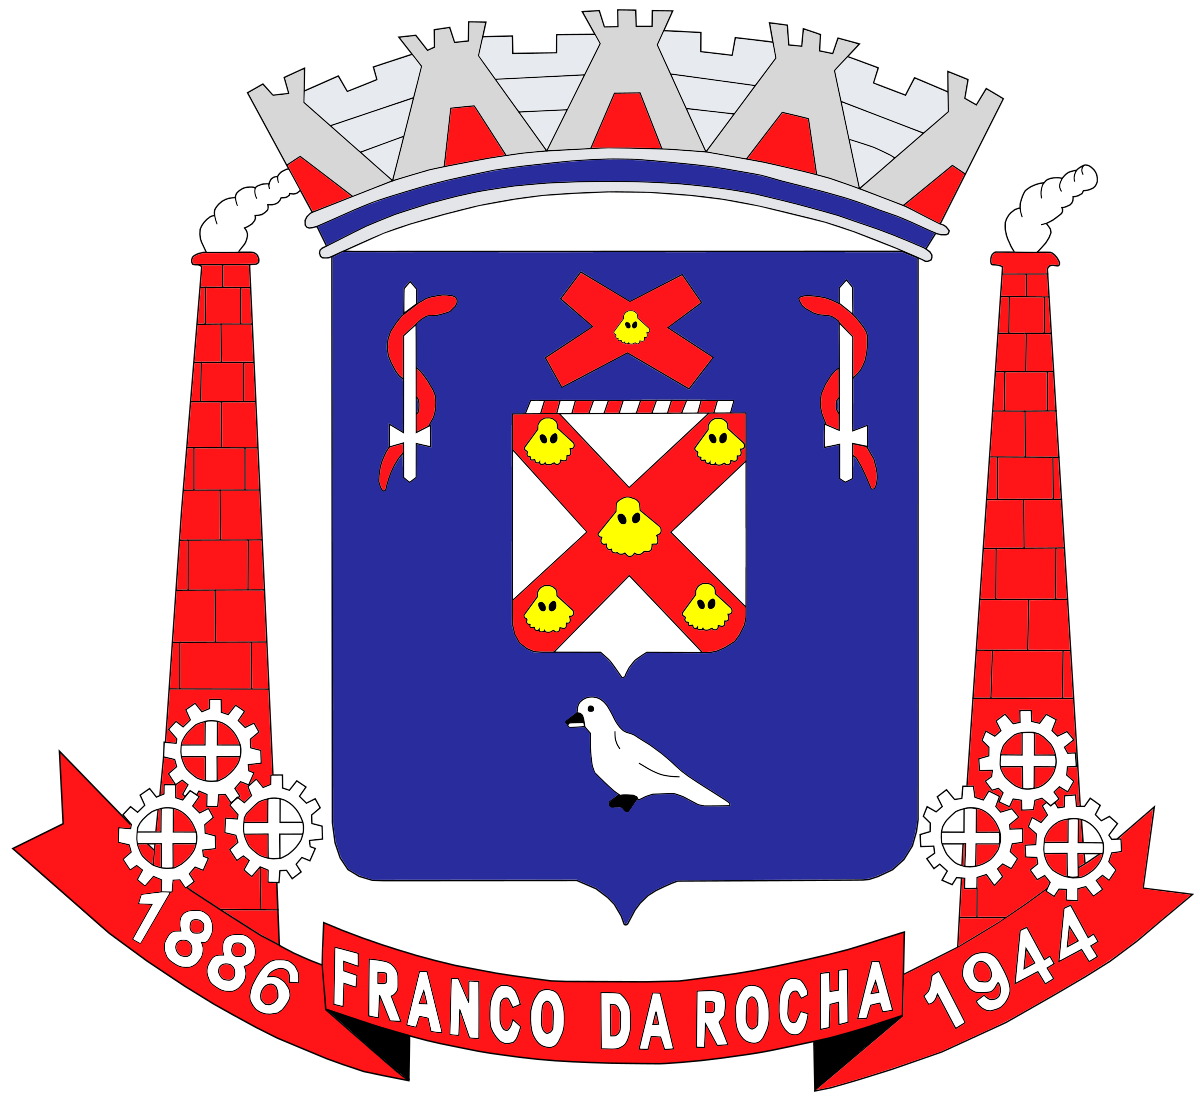 Camara de Franco da Rocha